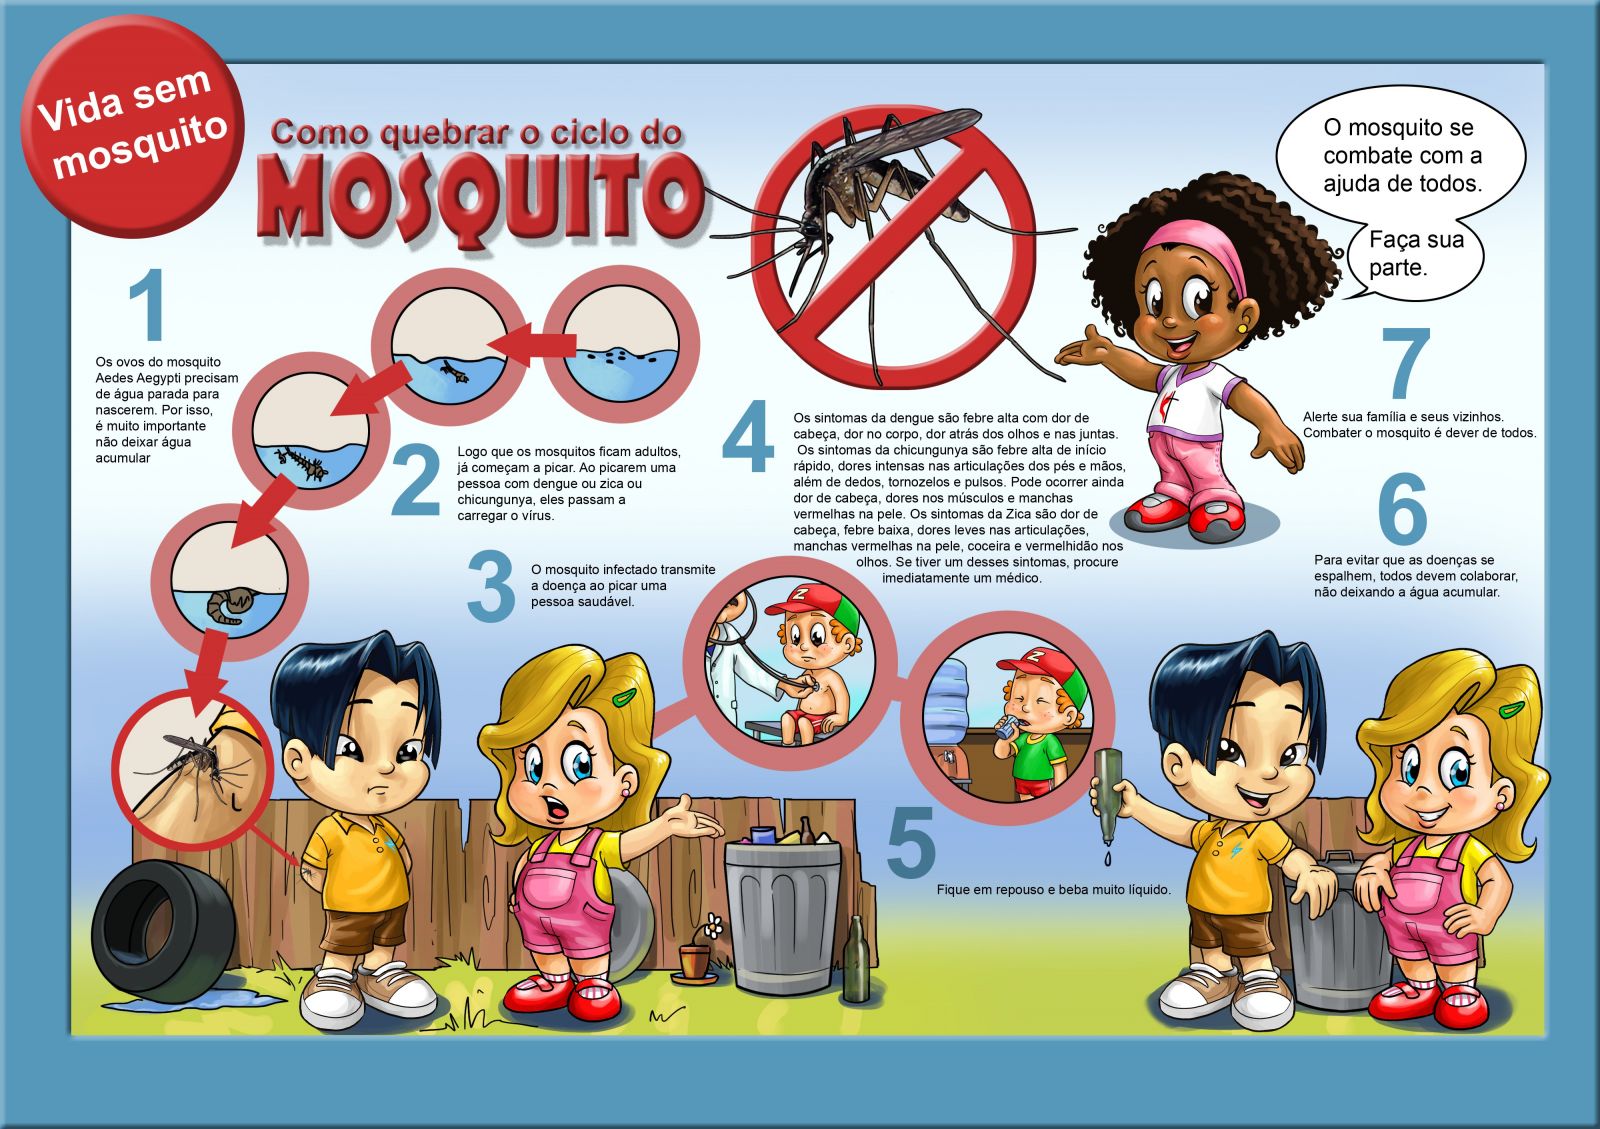 Contra dengue. Jogo contra a dengue - Escola Kids